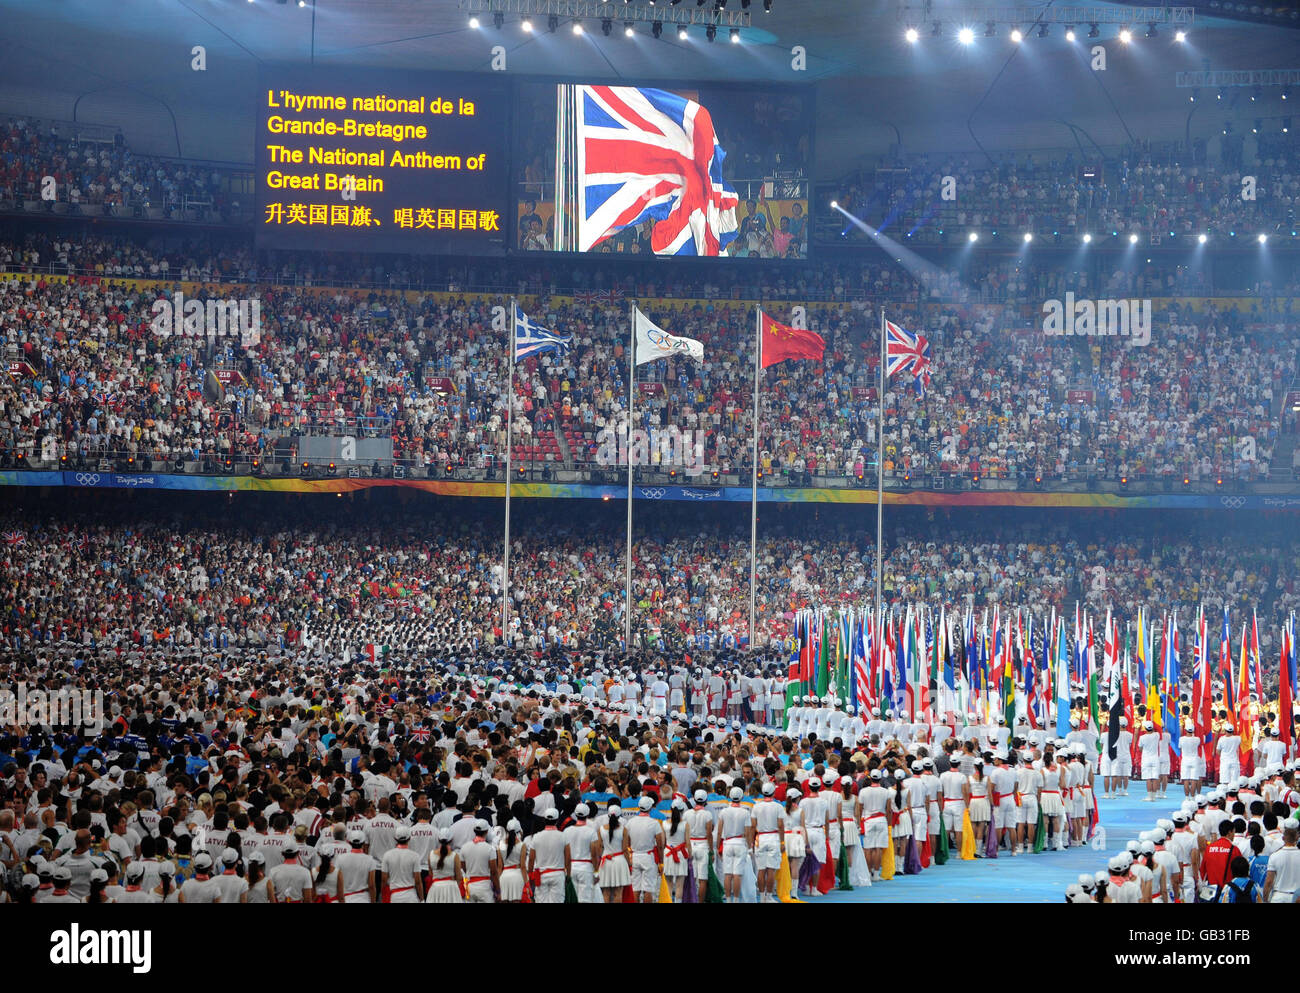 Célébrations lors de la cérémonie de clôture au stade national lors des Jeux Olympiques de Beijing en 2008, en Chine. Banque D'Images